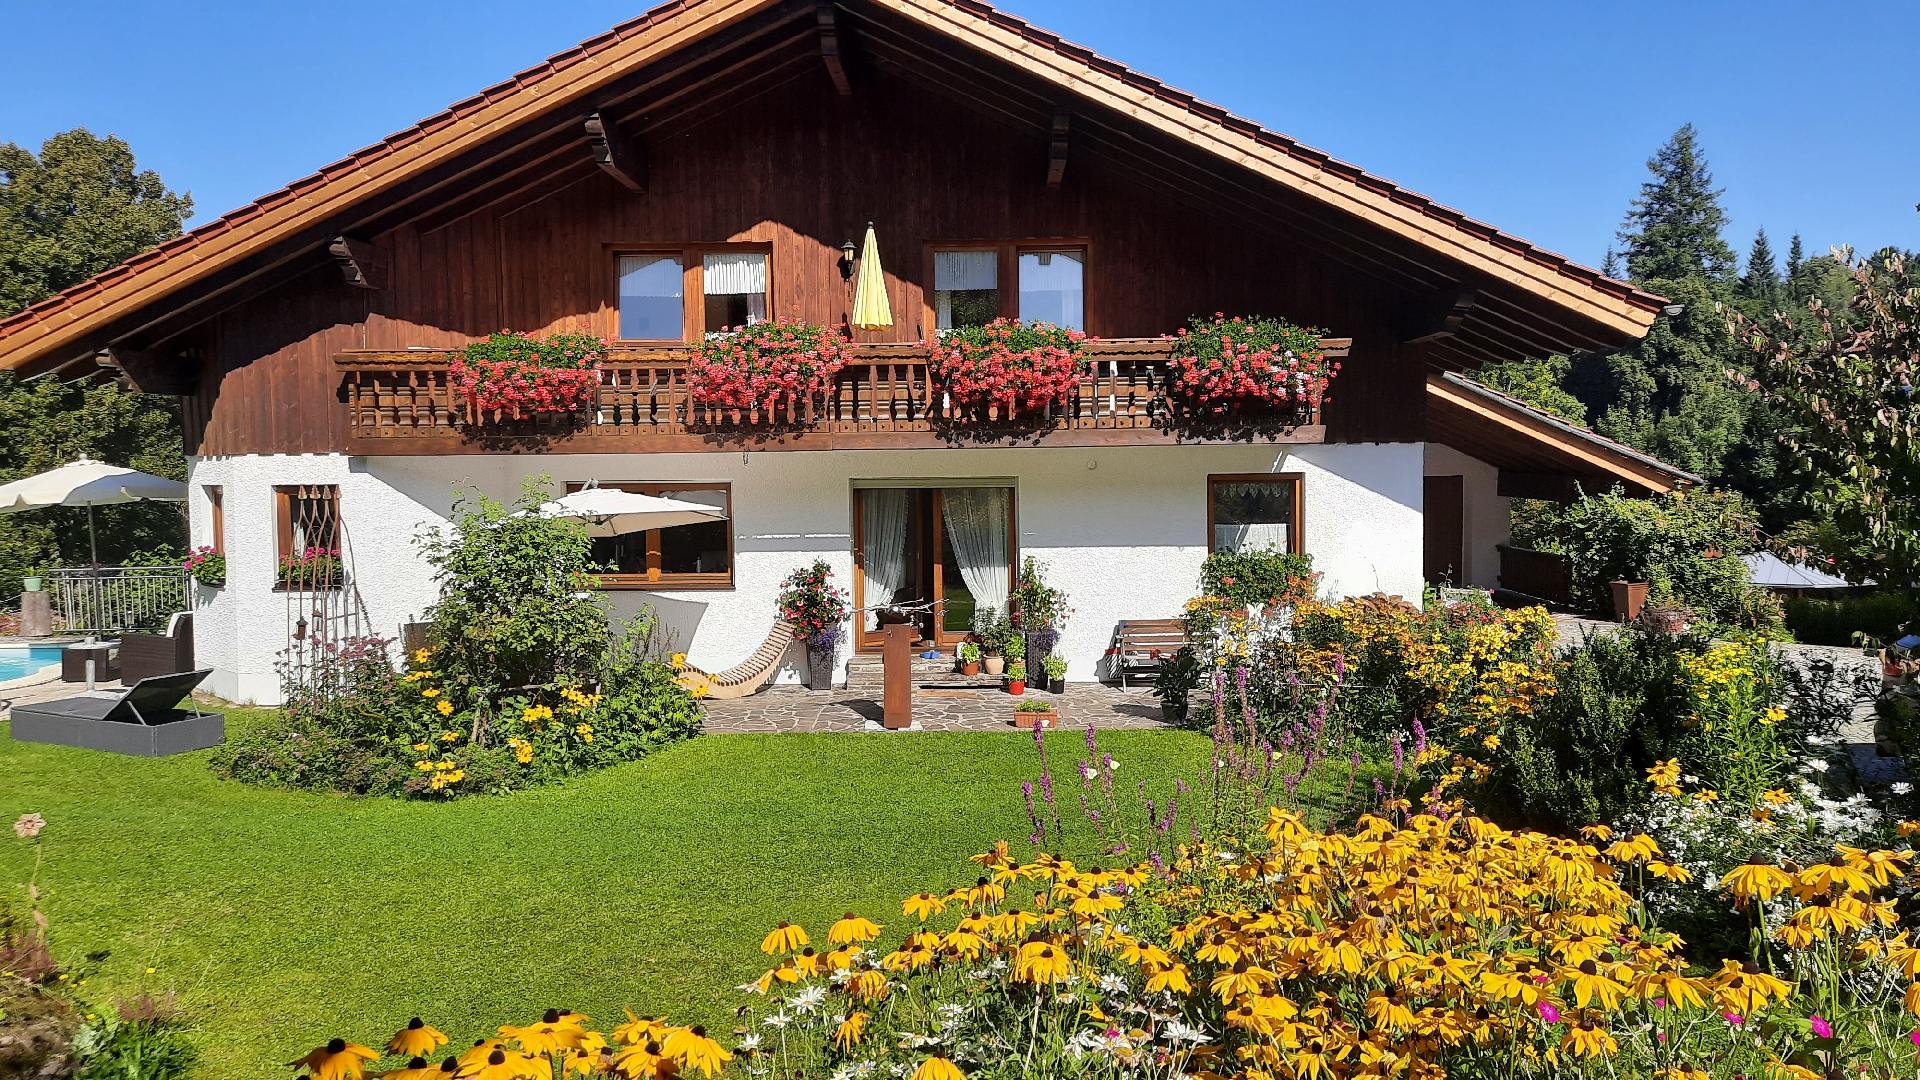 Ferienwohnung für 2 Personen ca. 65 m² i Ferienhaus in Europa